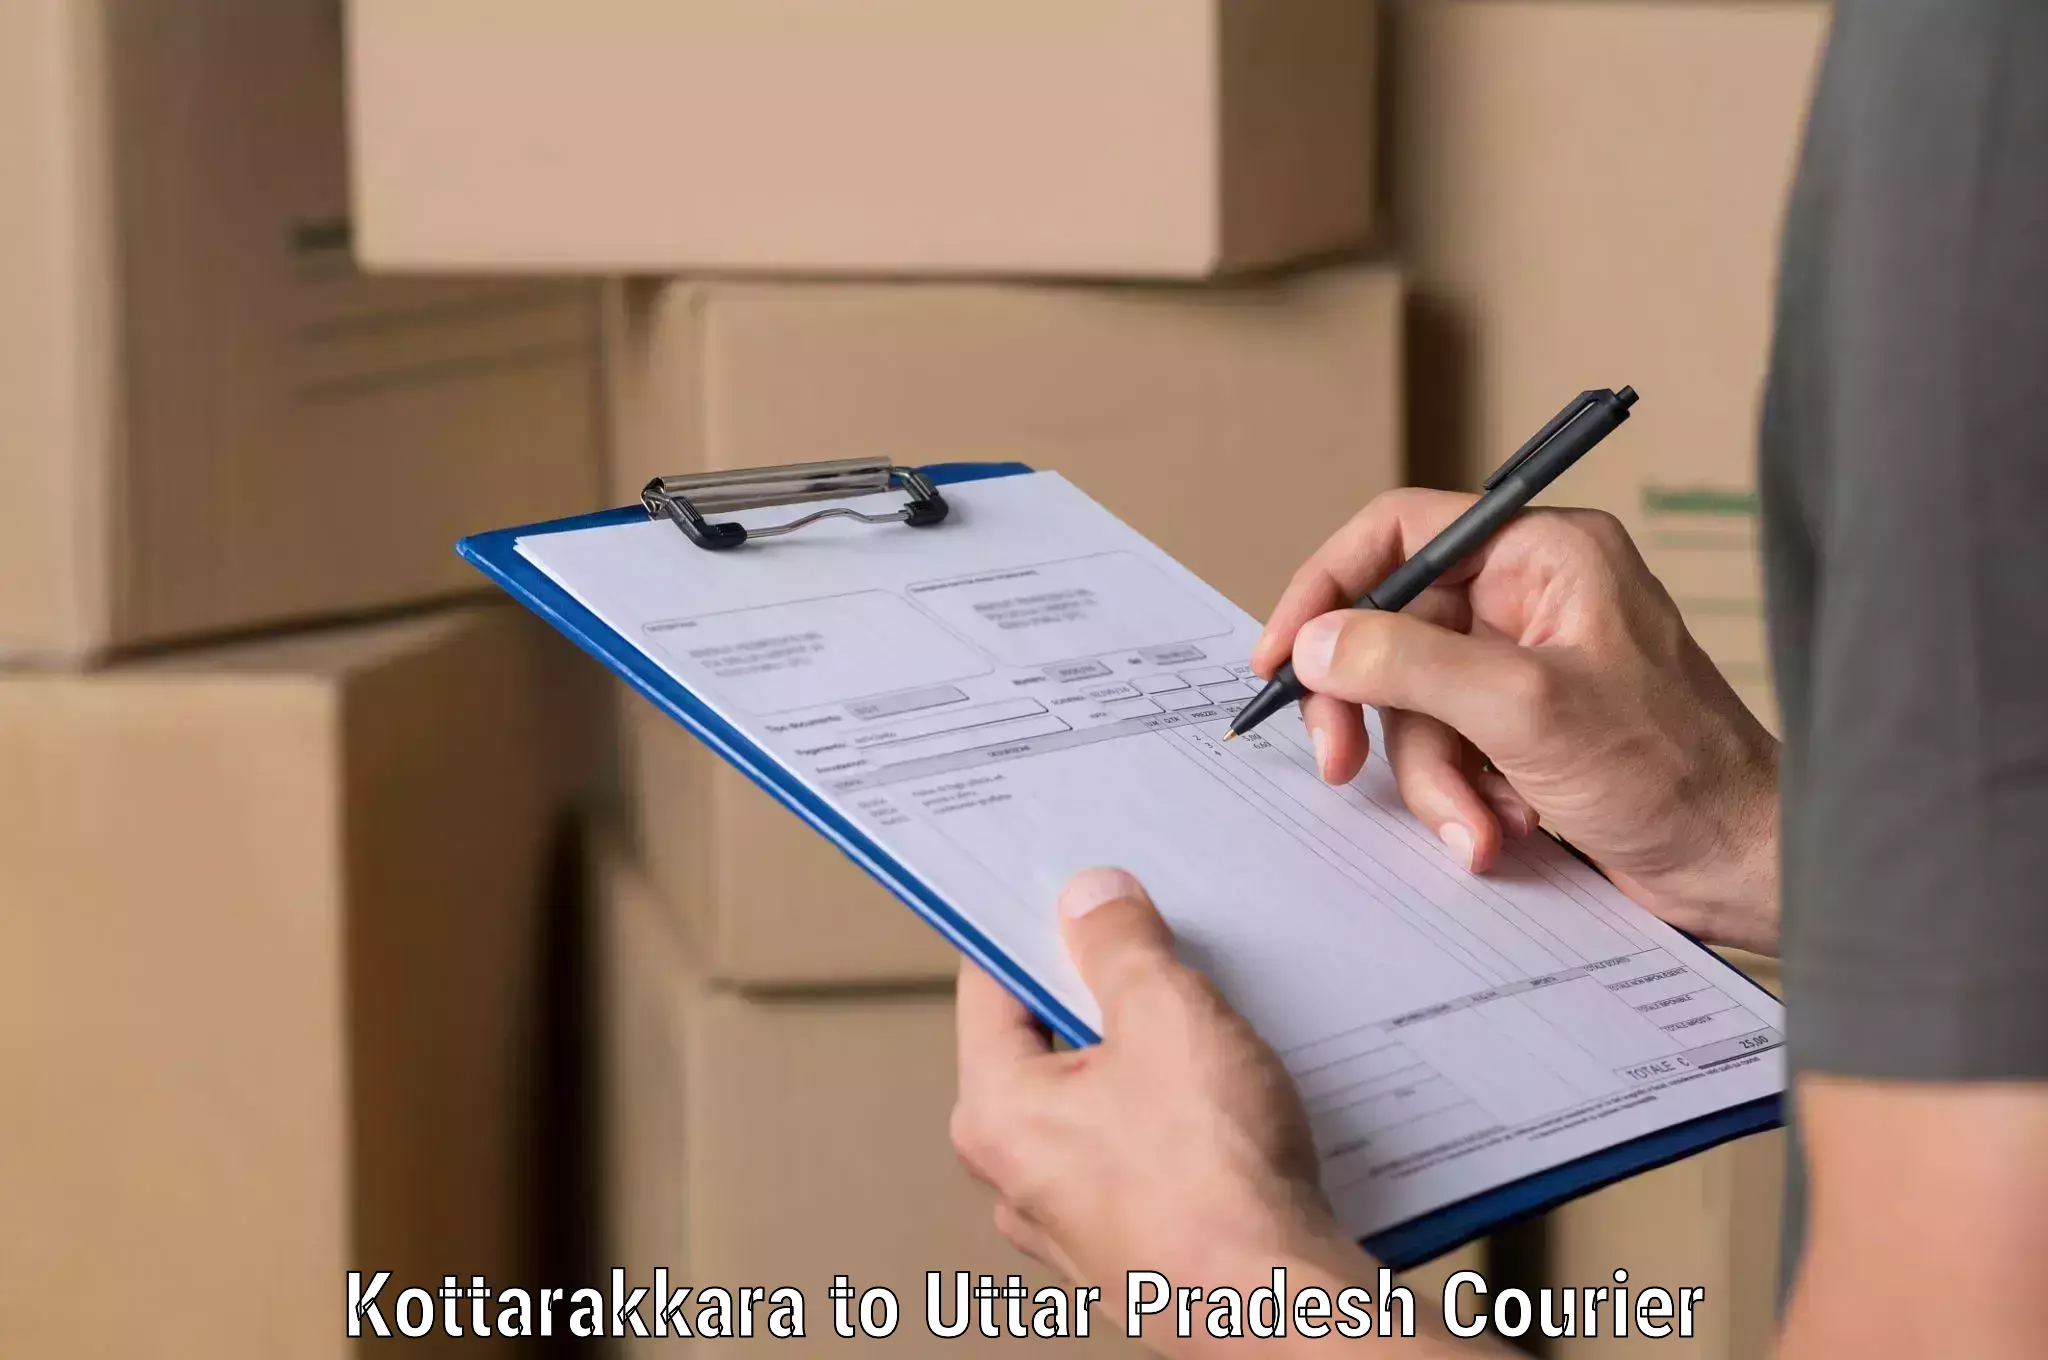 Next-day freight services Kottarakkara to Sikandara